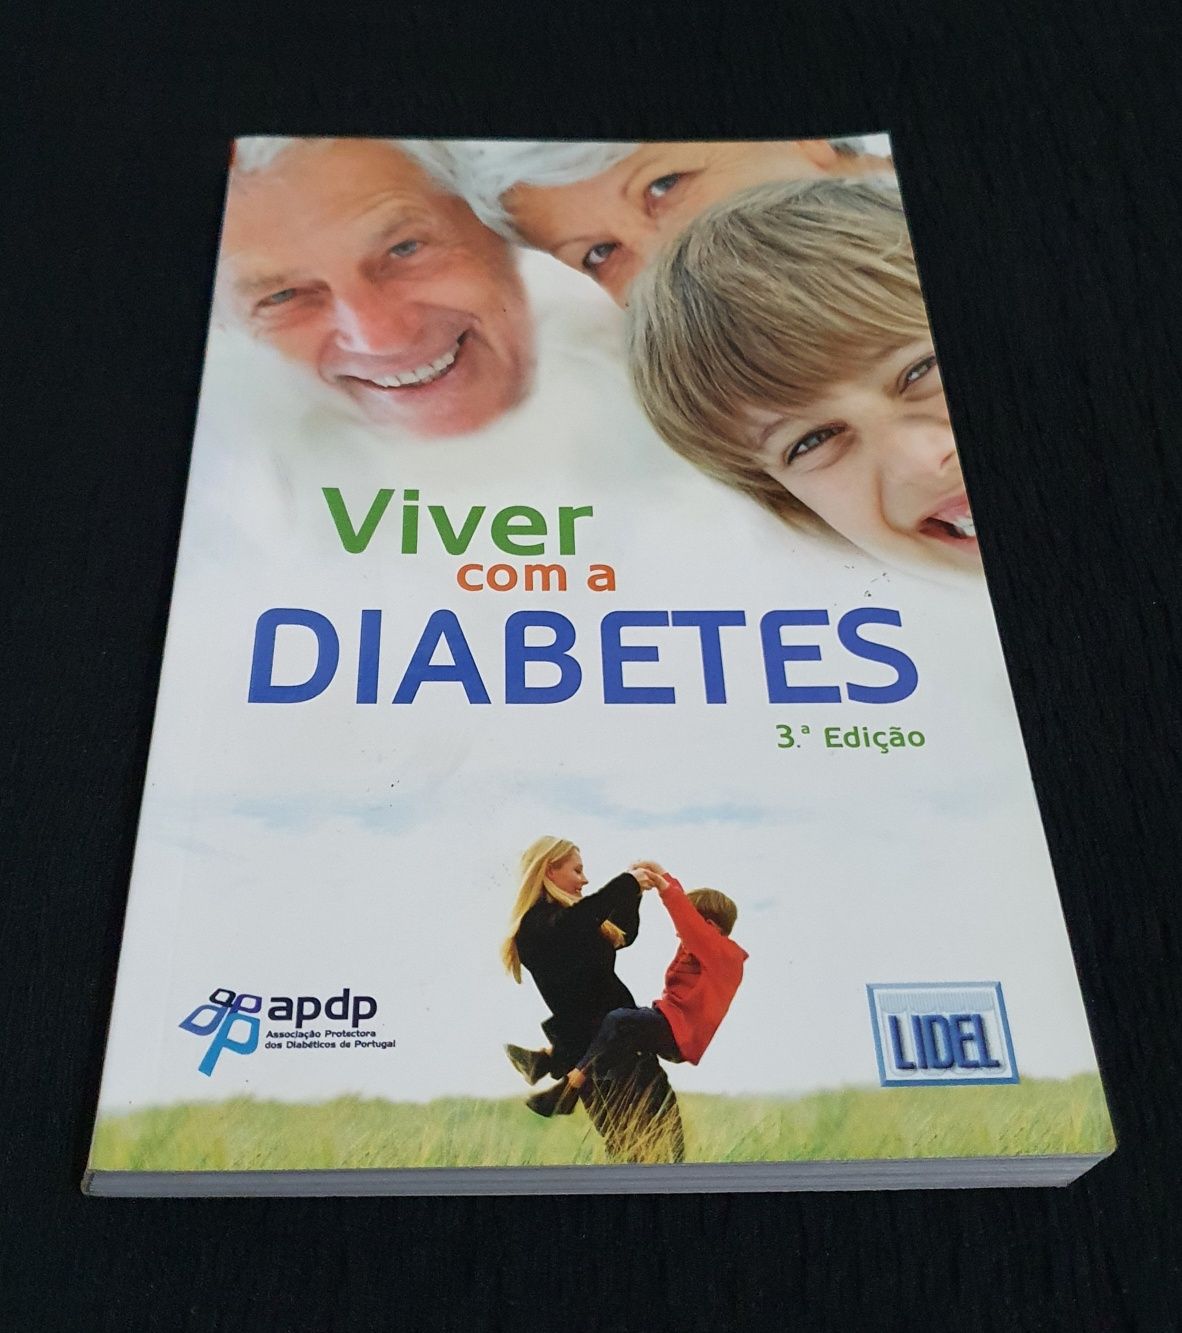 Viver com a diabetes 3 edição